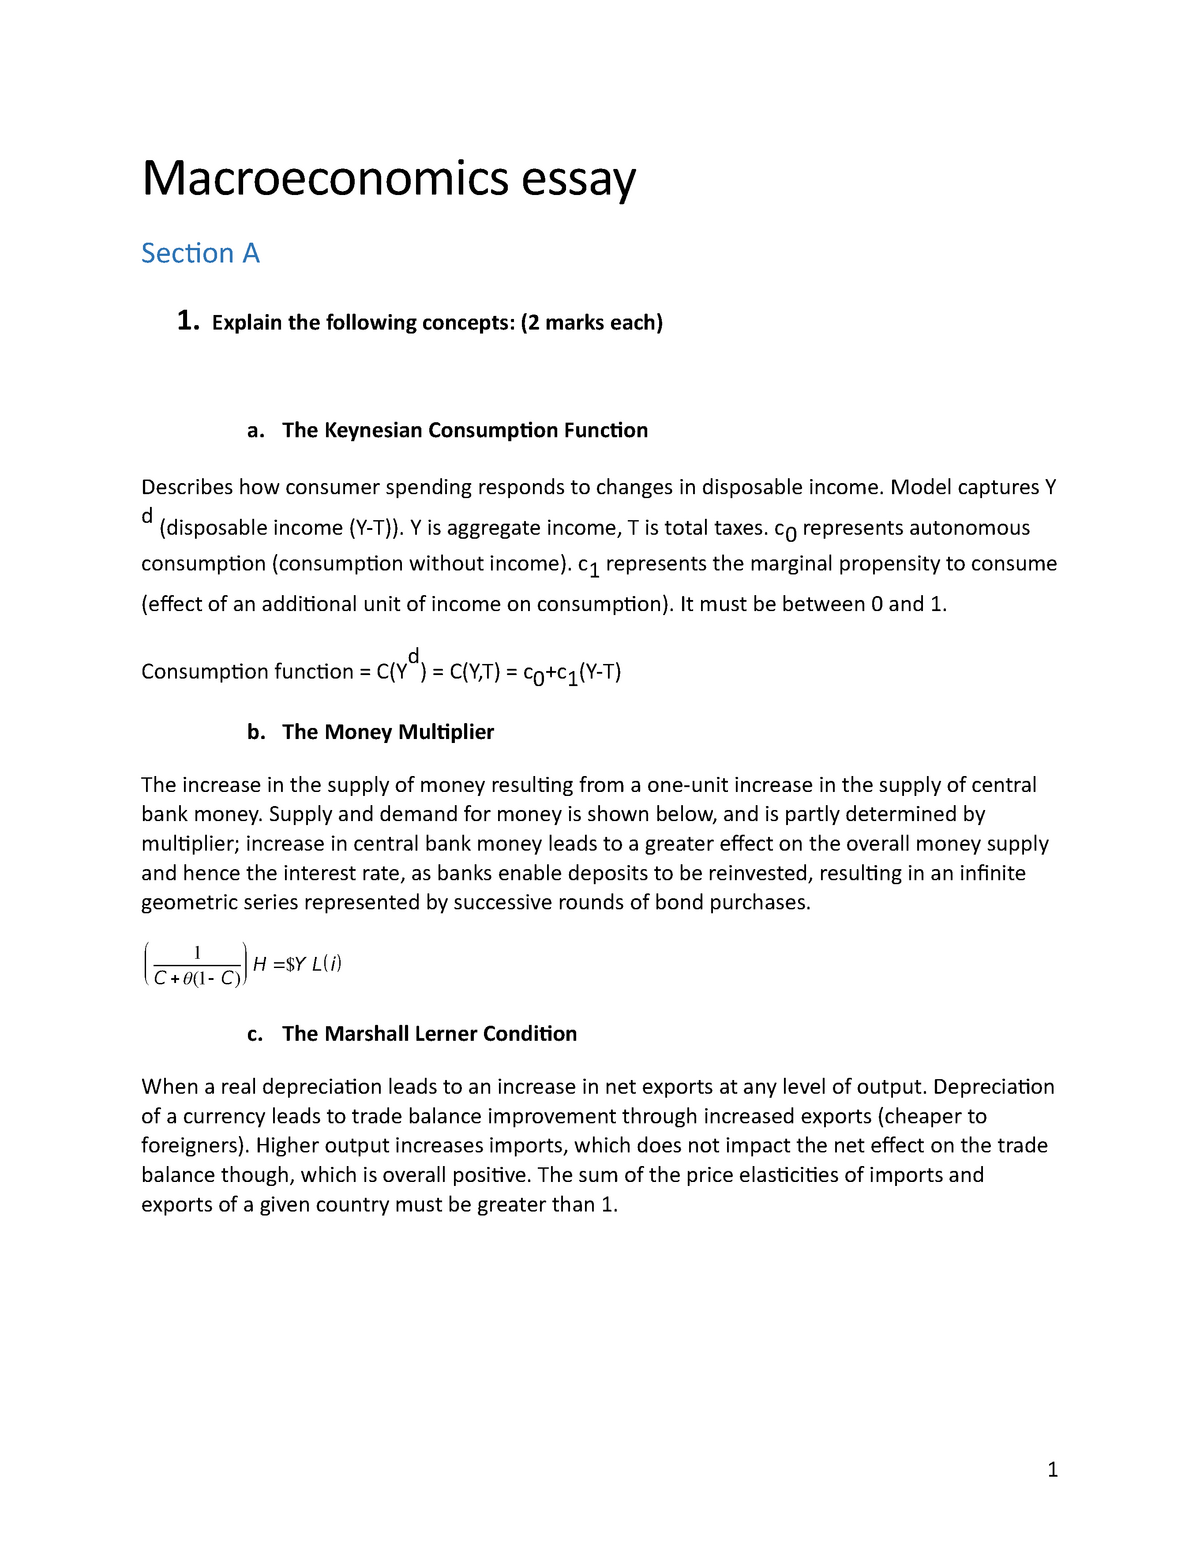 define macroeconomics essay